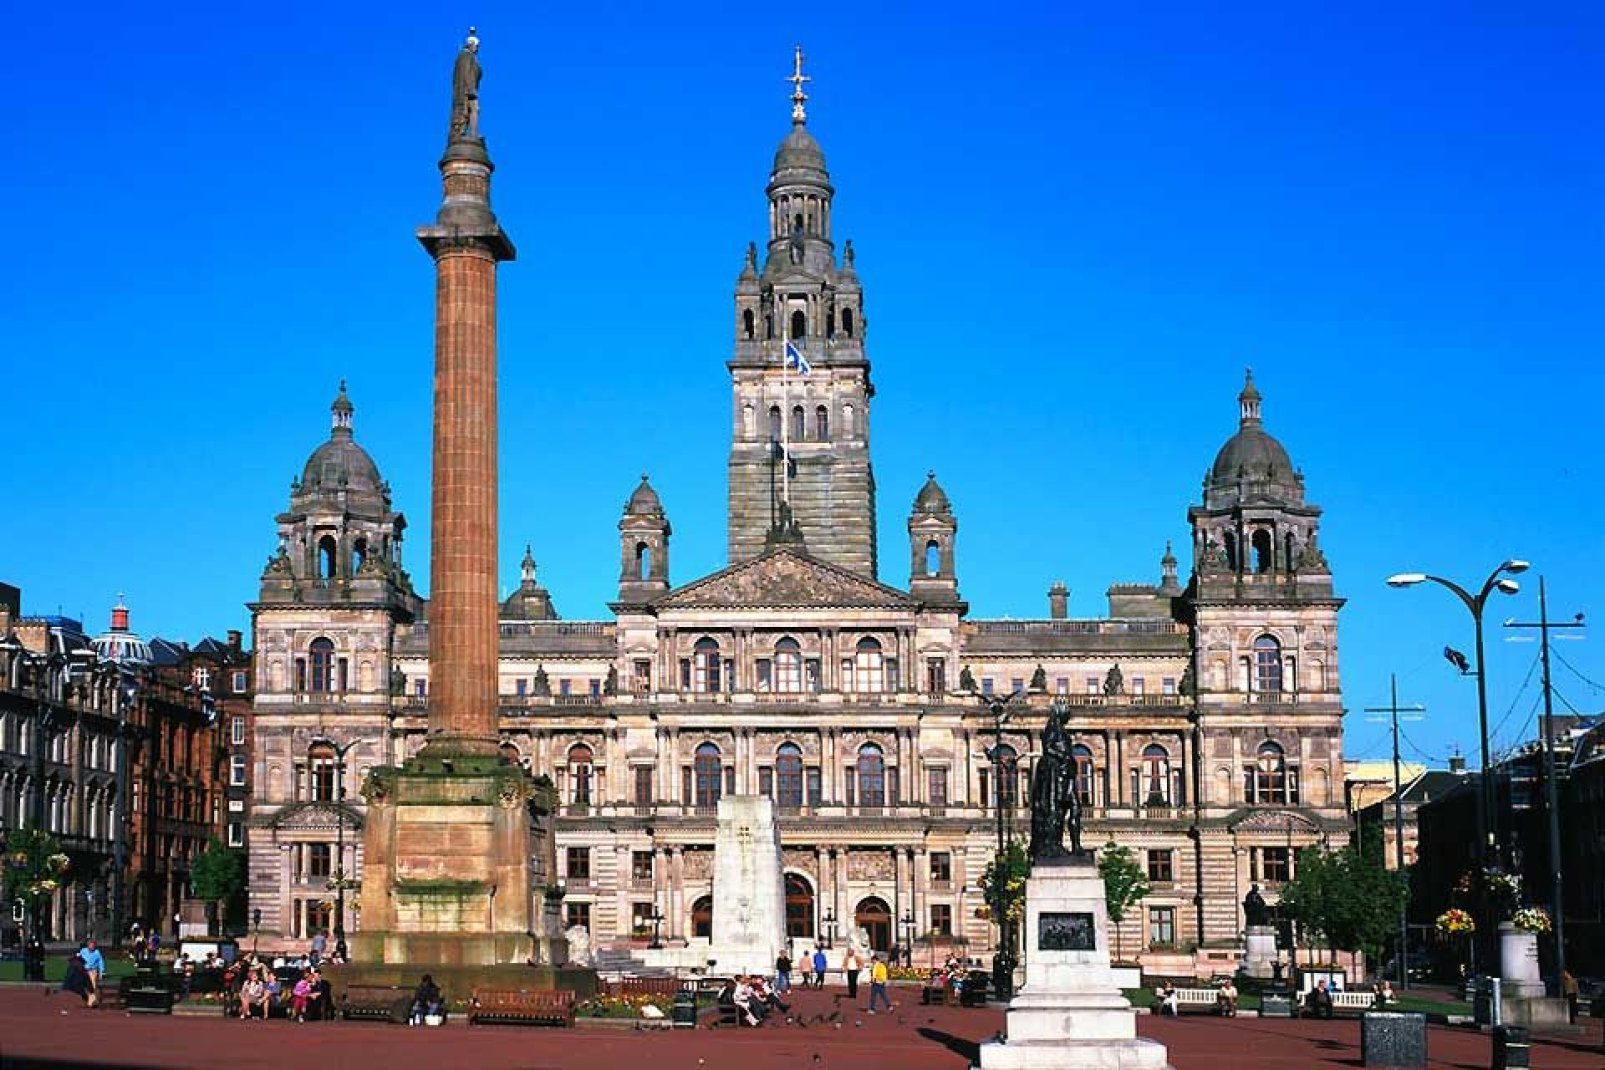 Die grte Stadt von Schottland und der drittdichtest besiedelte Ballungsraum des Vereinigten Knigreichs. Glasgow rangiert an 57. Stelle des weltweiten Rankings der Stdte mit der besten Lebensqualitt.